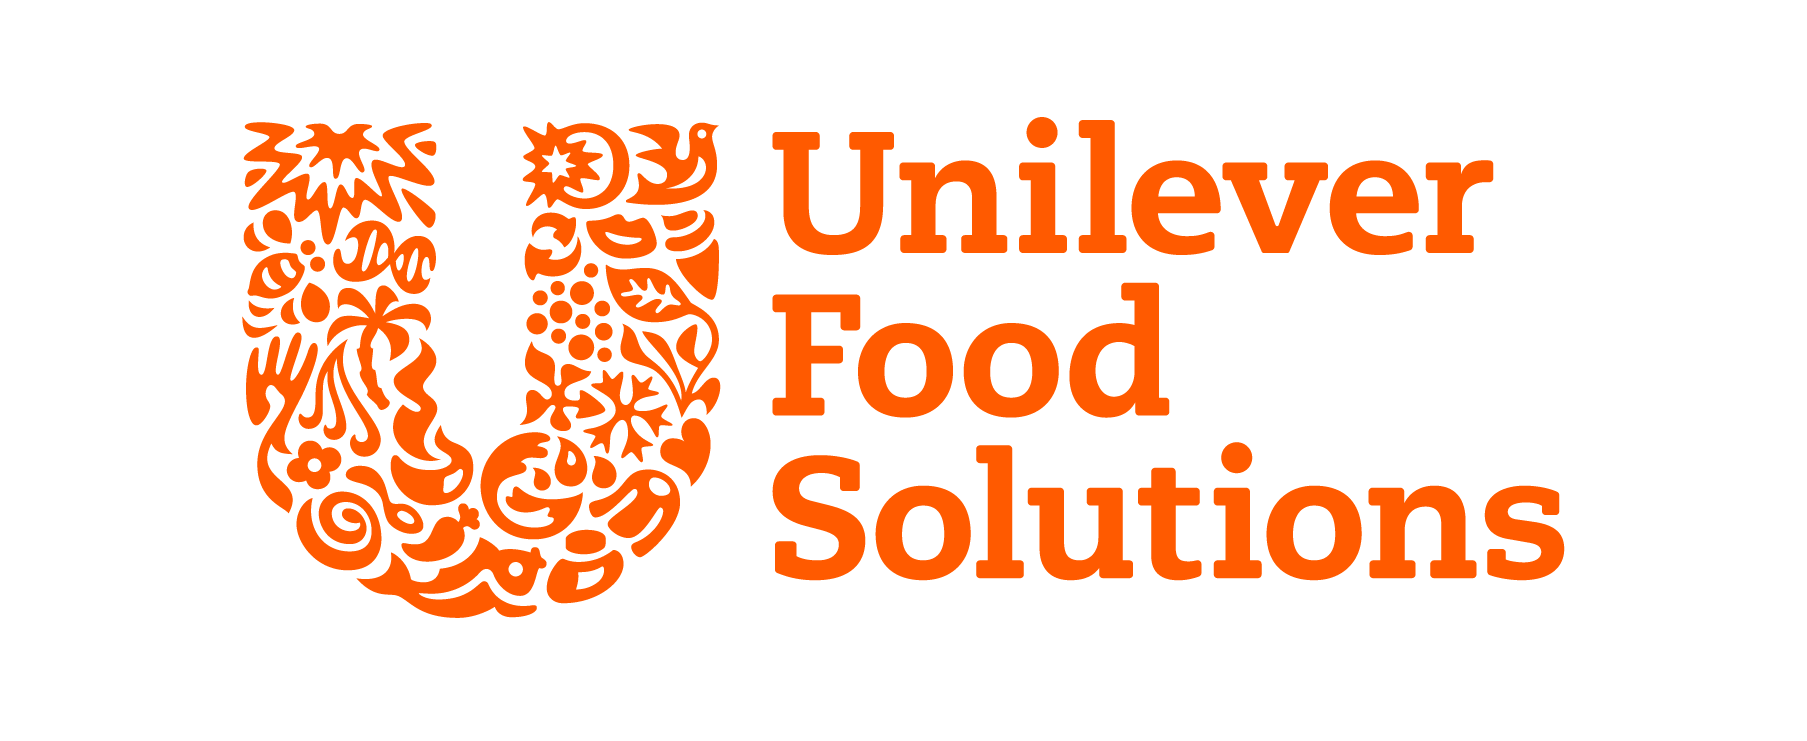 Pakistan-Unilever-profit.png